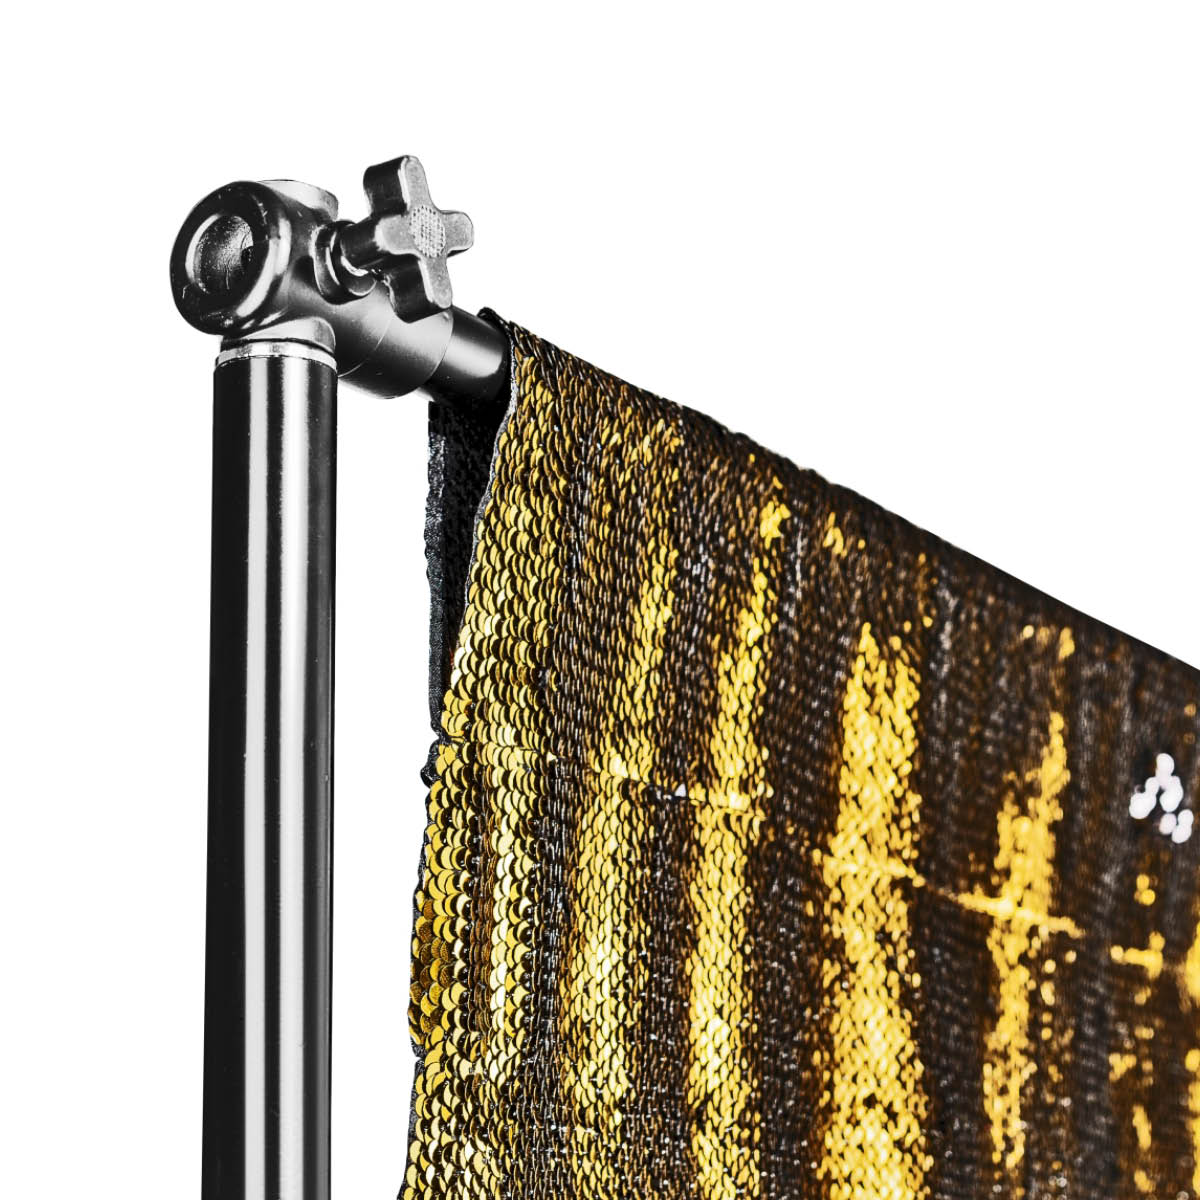 Walimex pro Paillettenhintergrund 2,6 x 2,4 m gold/schwarz metallic mit Tasche 